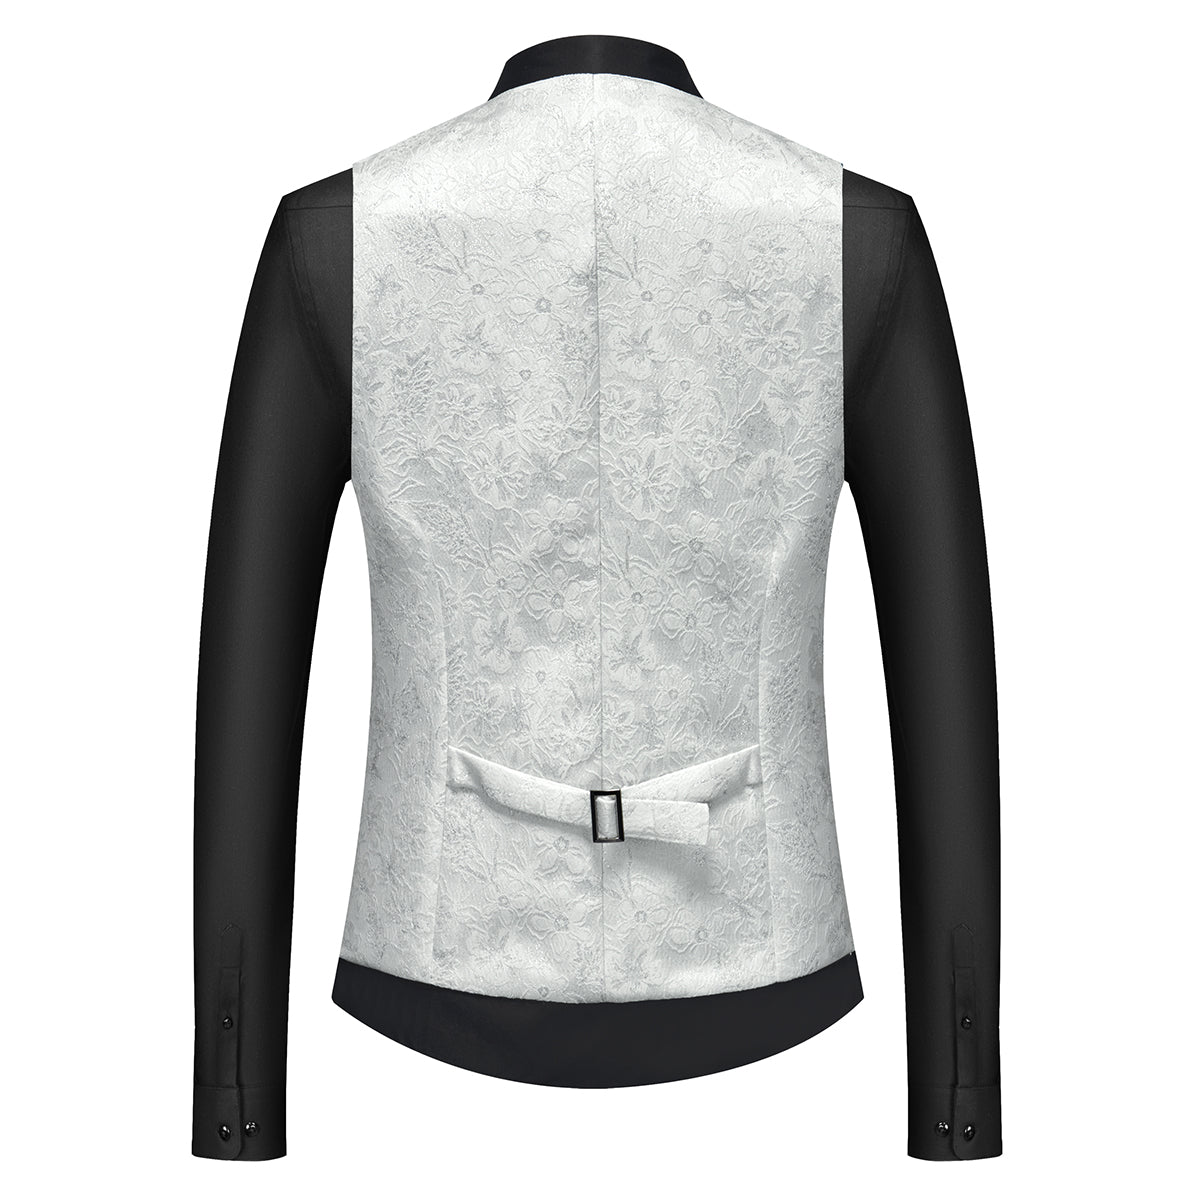 Men's Shawl Collar Print Suit 3-Piece Dress Suit White